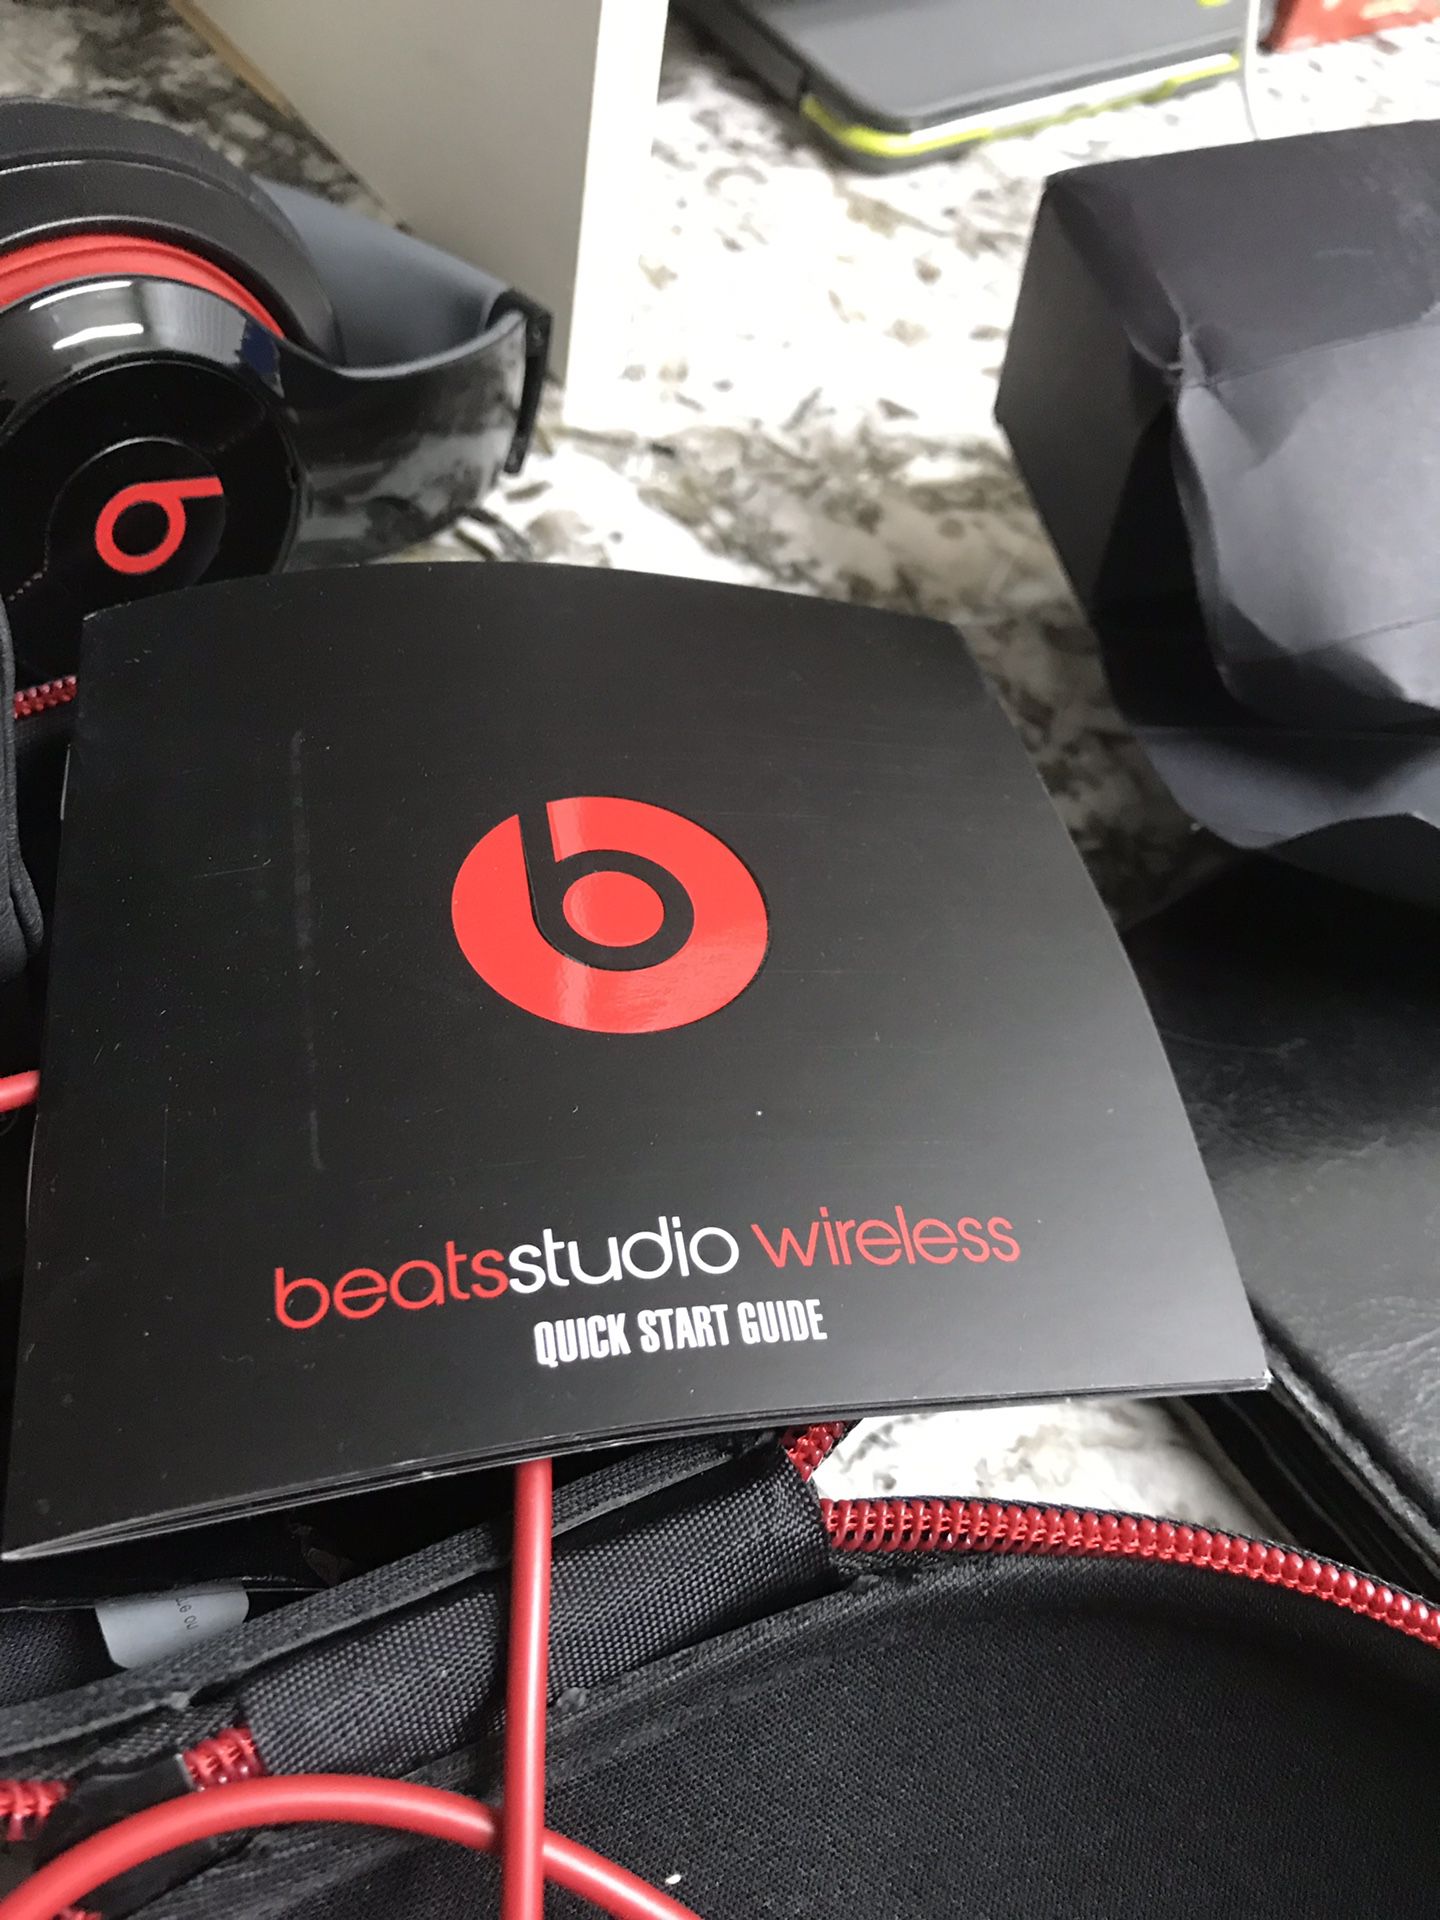 Studio beats wireless headphones